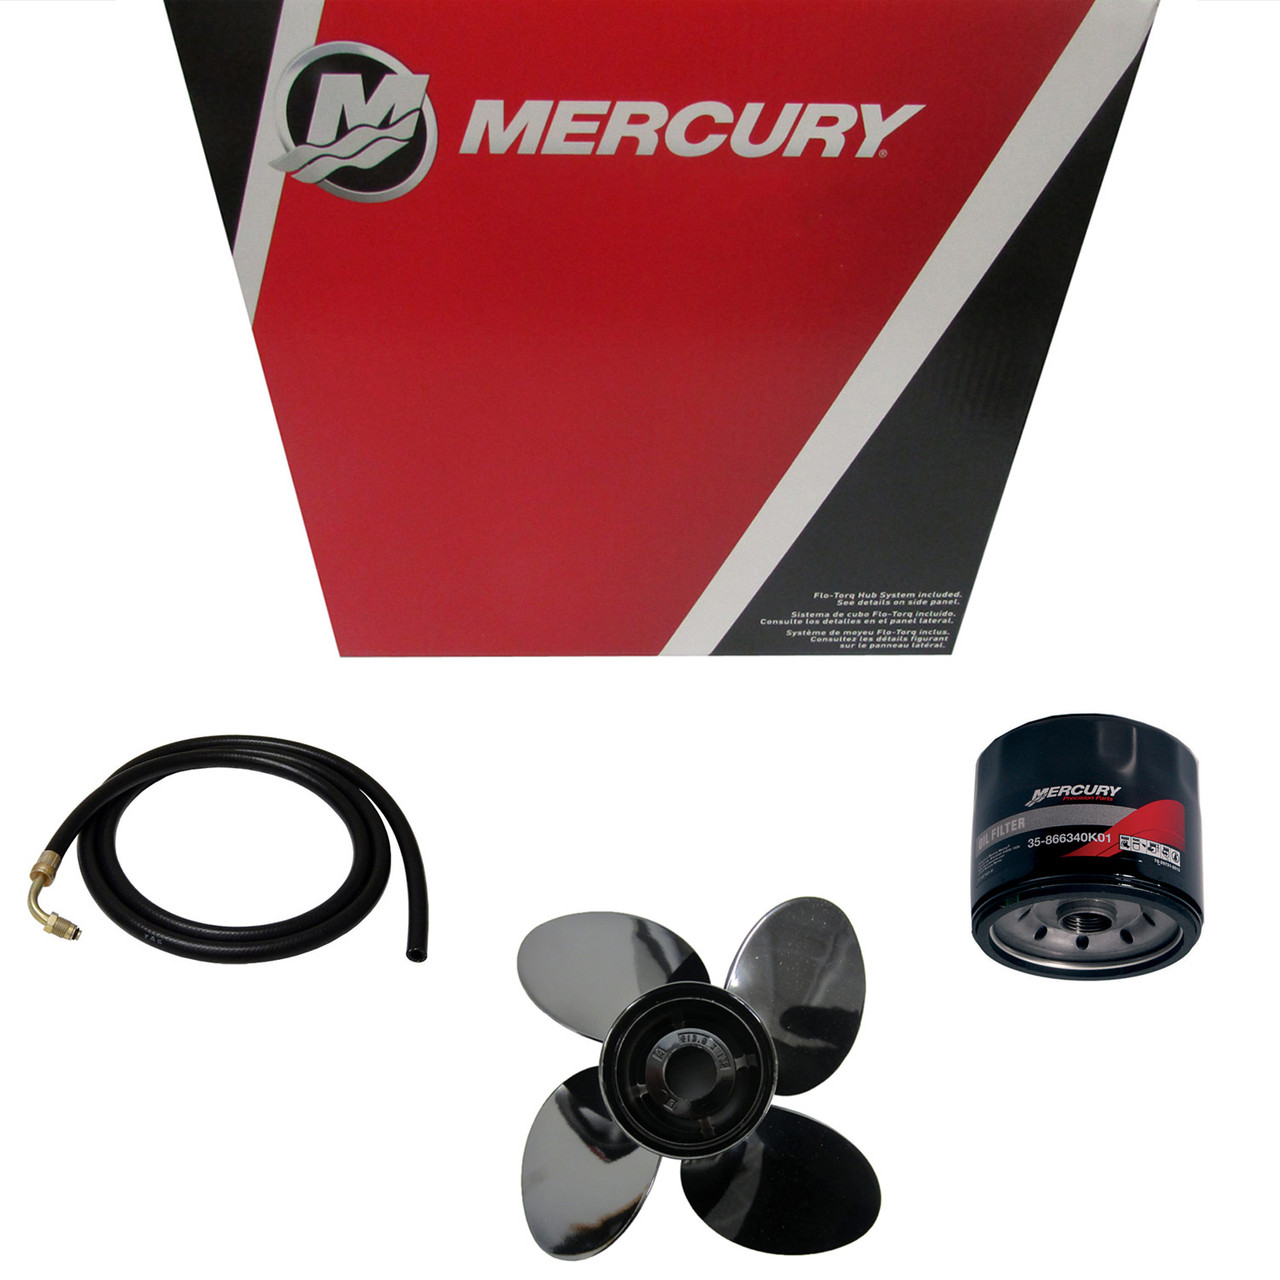 Mercury Marine / Mercruiser New OEM Nla, 32-8M0044845